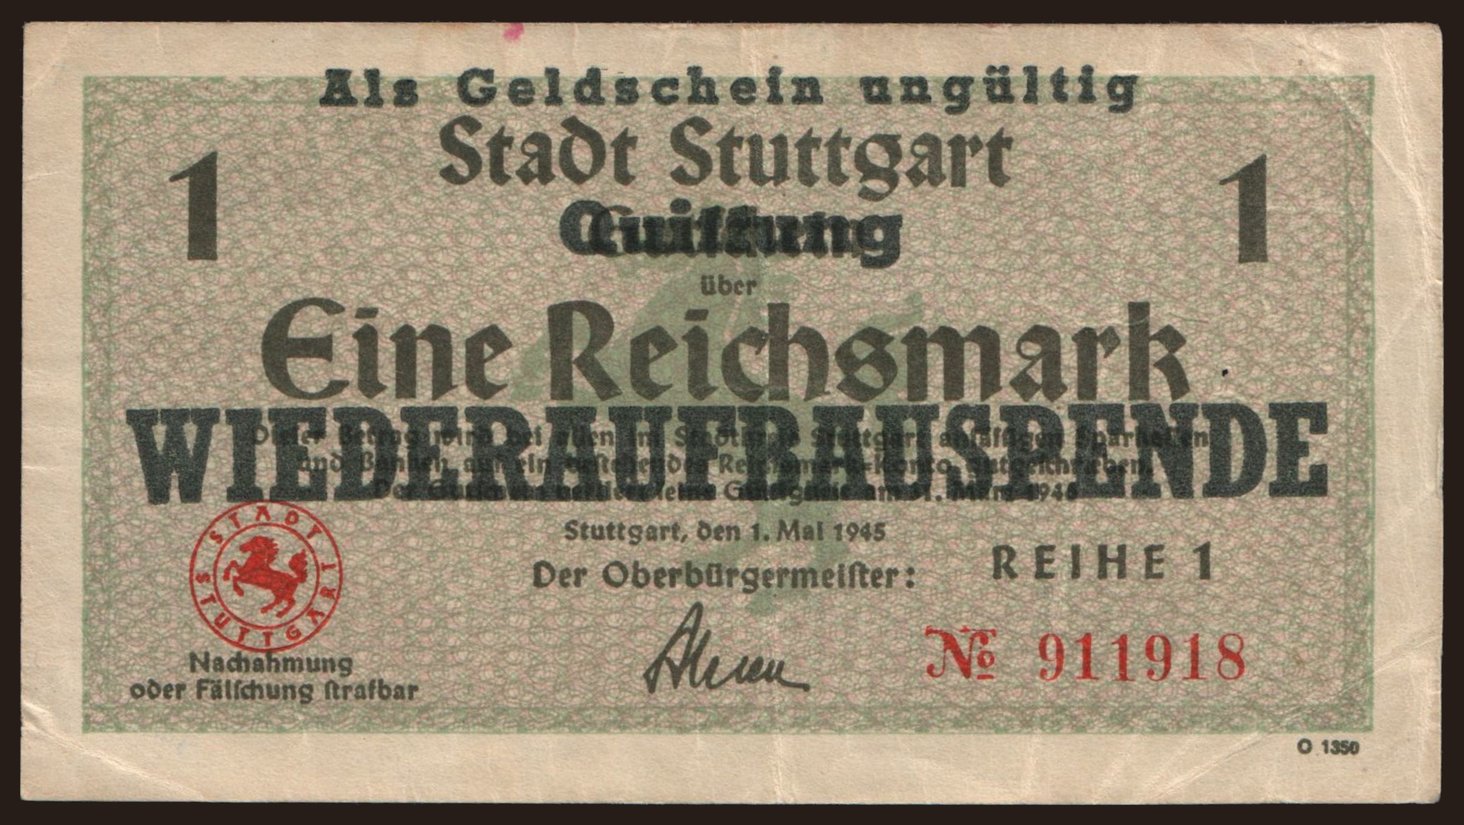 Stuttgart, 1 Reichsmark, 1945